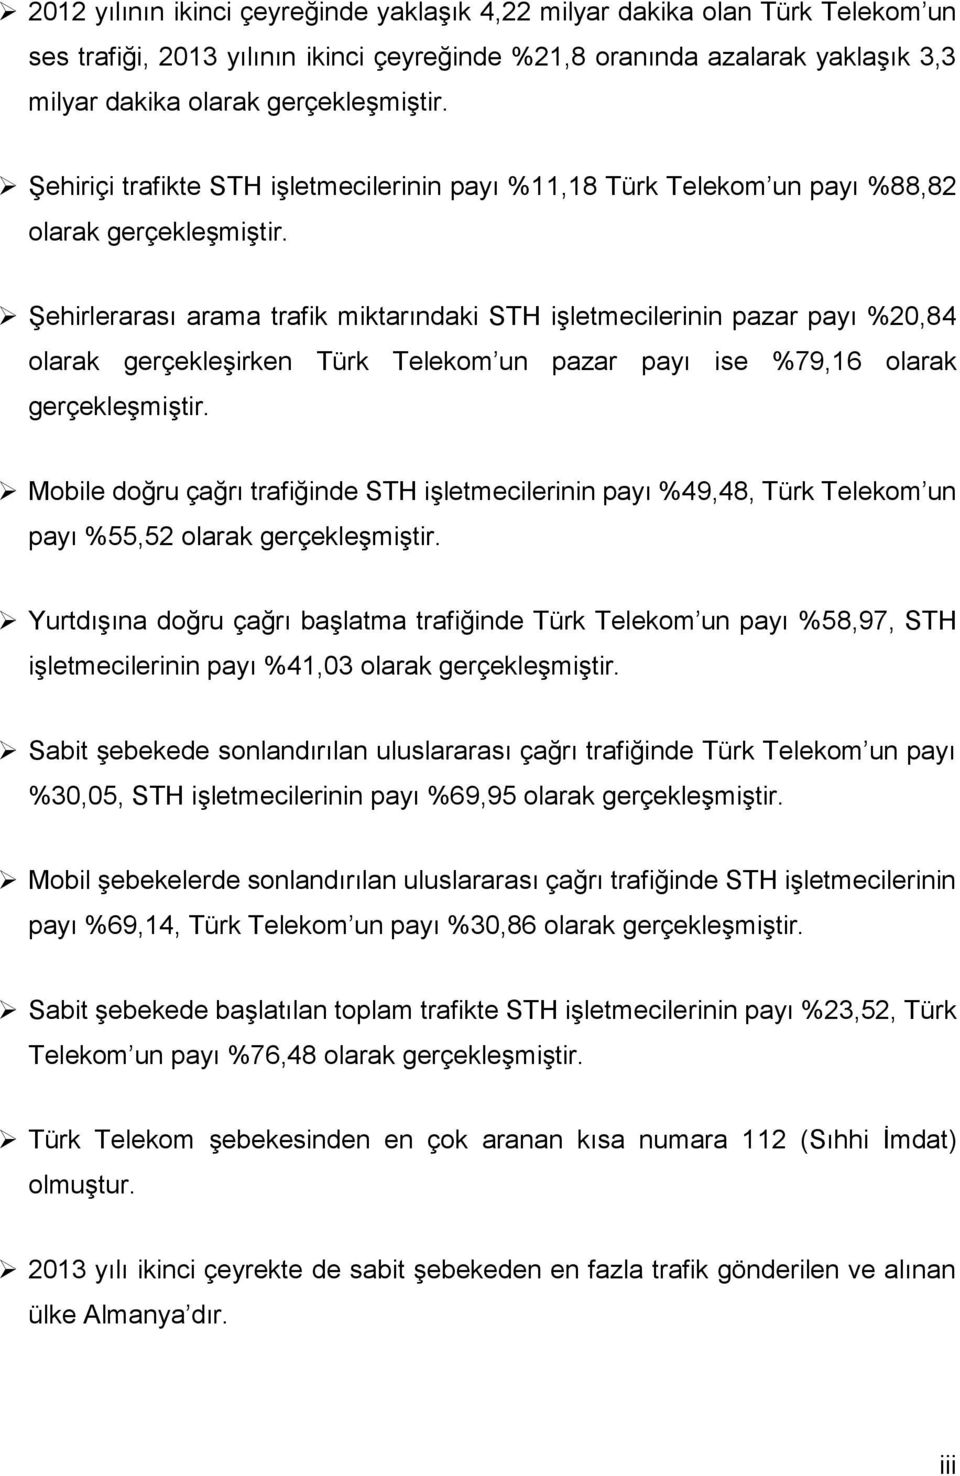 Şehirlerarası arama trafik miktarındaki STH işletmecilerinin pazar payı %2,84 olarak gerçekleşirken Türk Telekom un pazar payı ise %79,16 olarak gerçekleşmiştir.